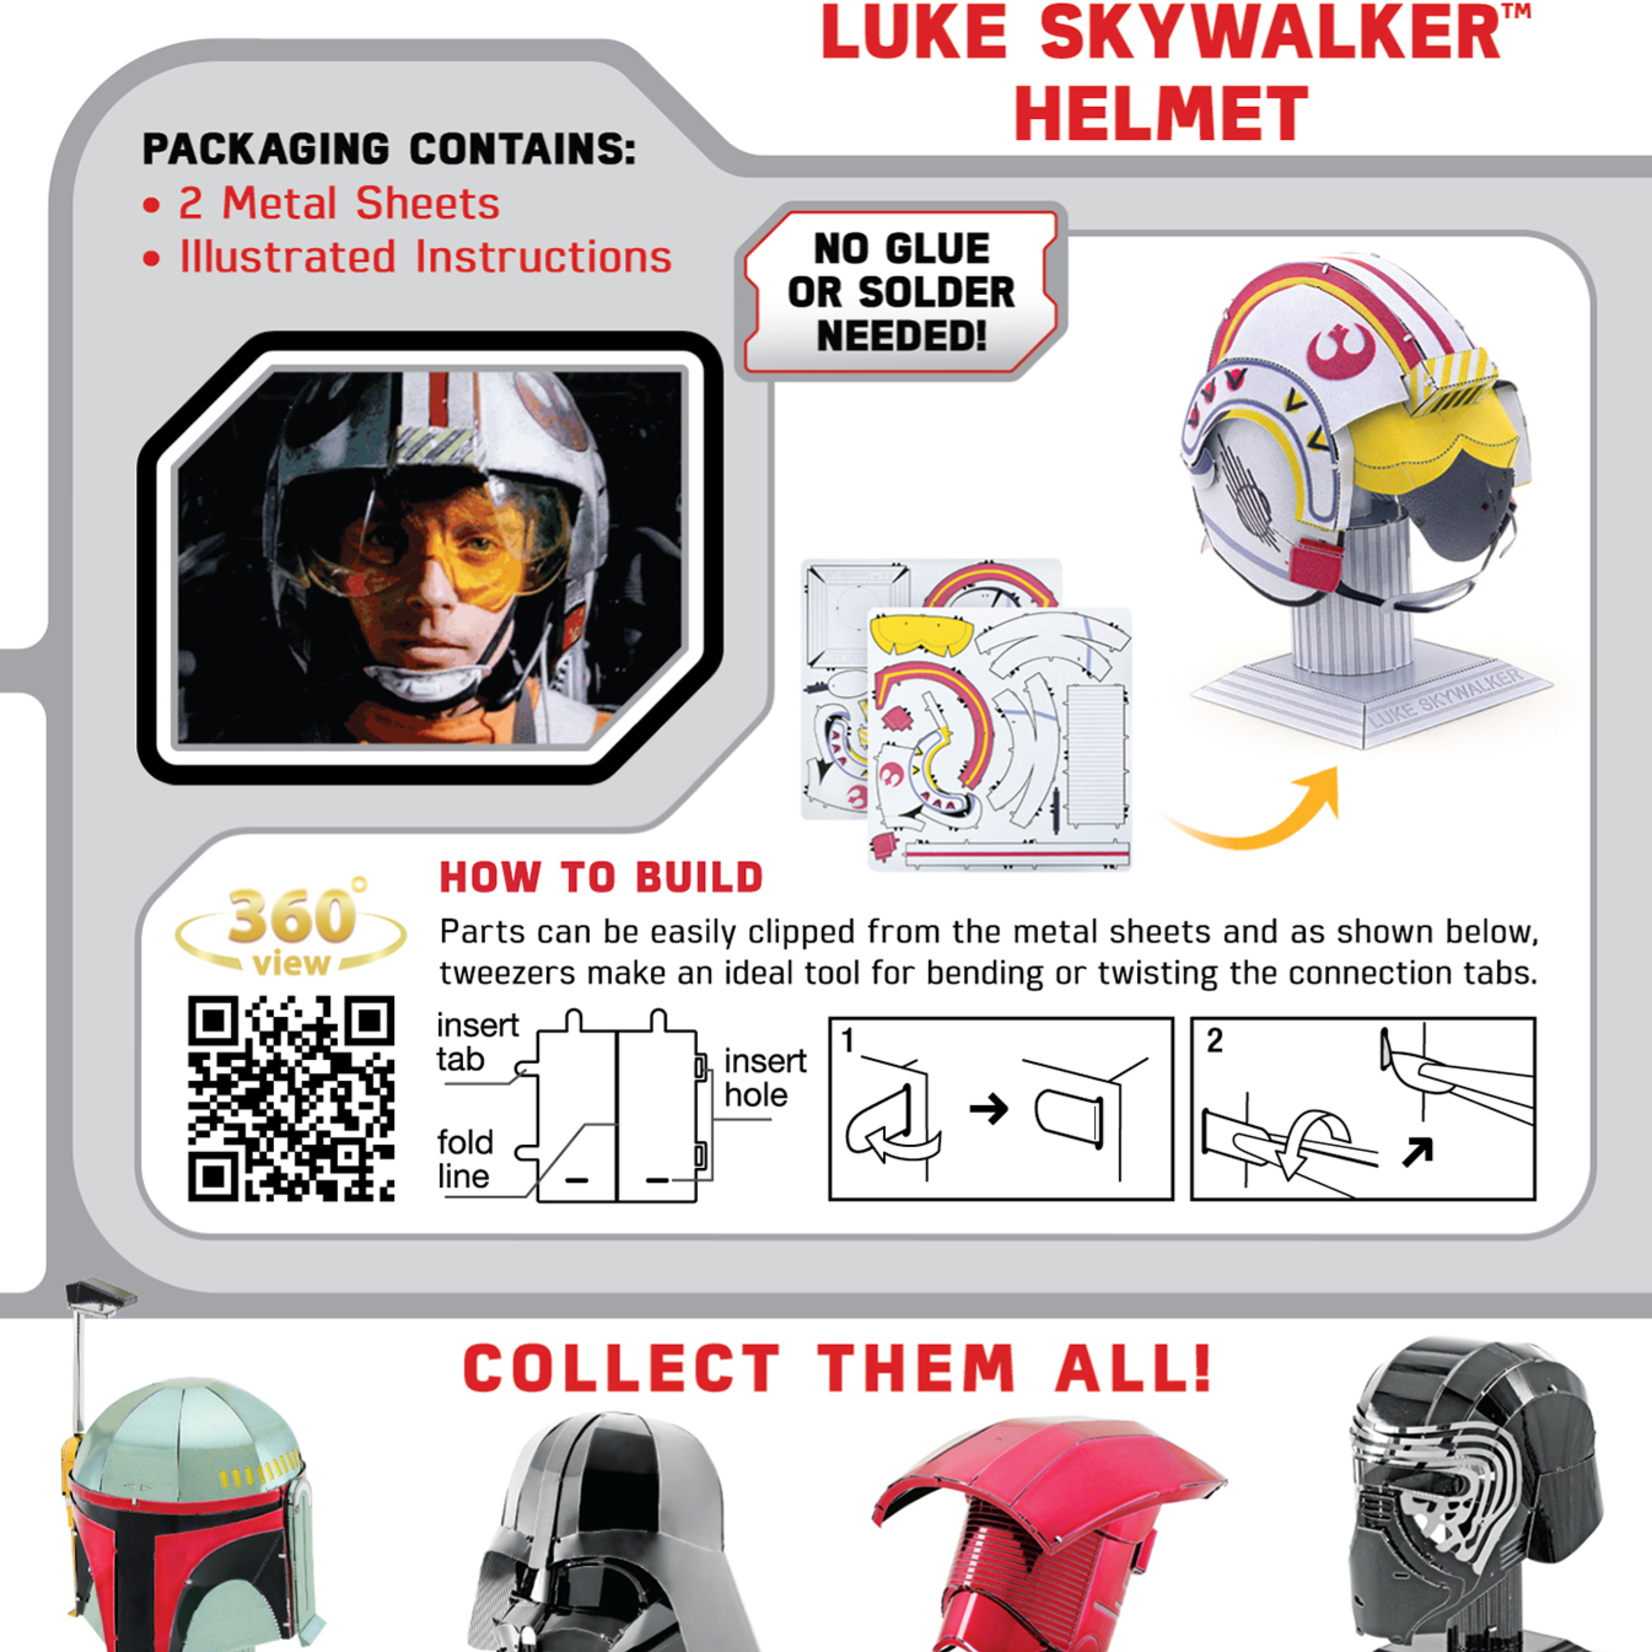 Metal Earth Metal Earth - Star Wars : Luke Skywalker Helmet